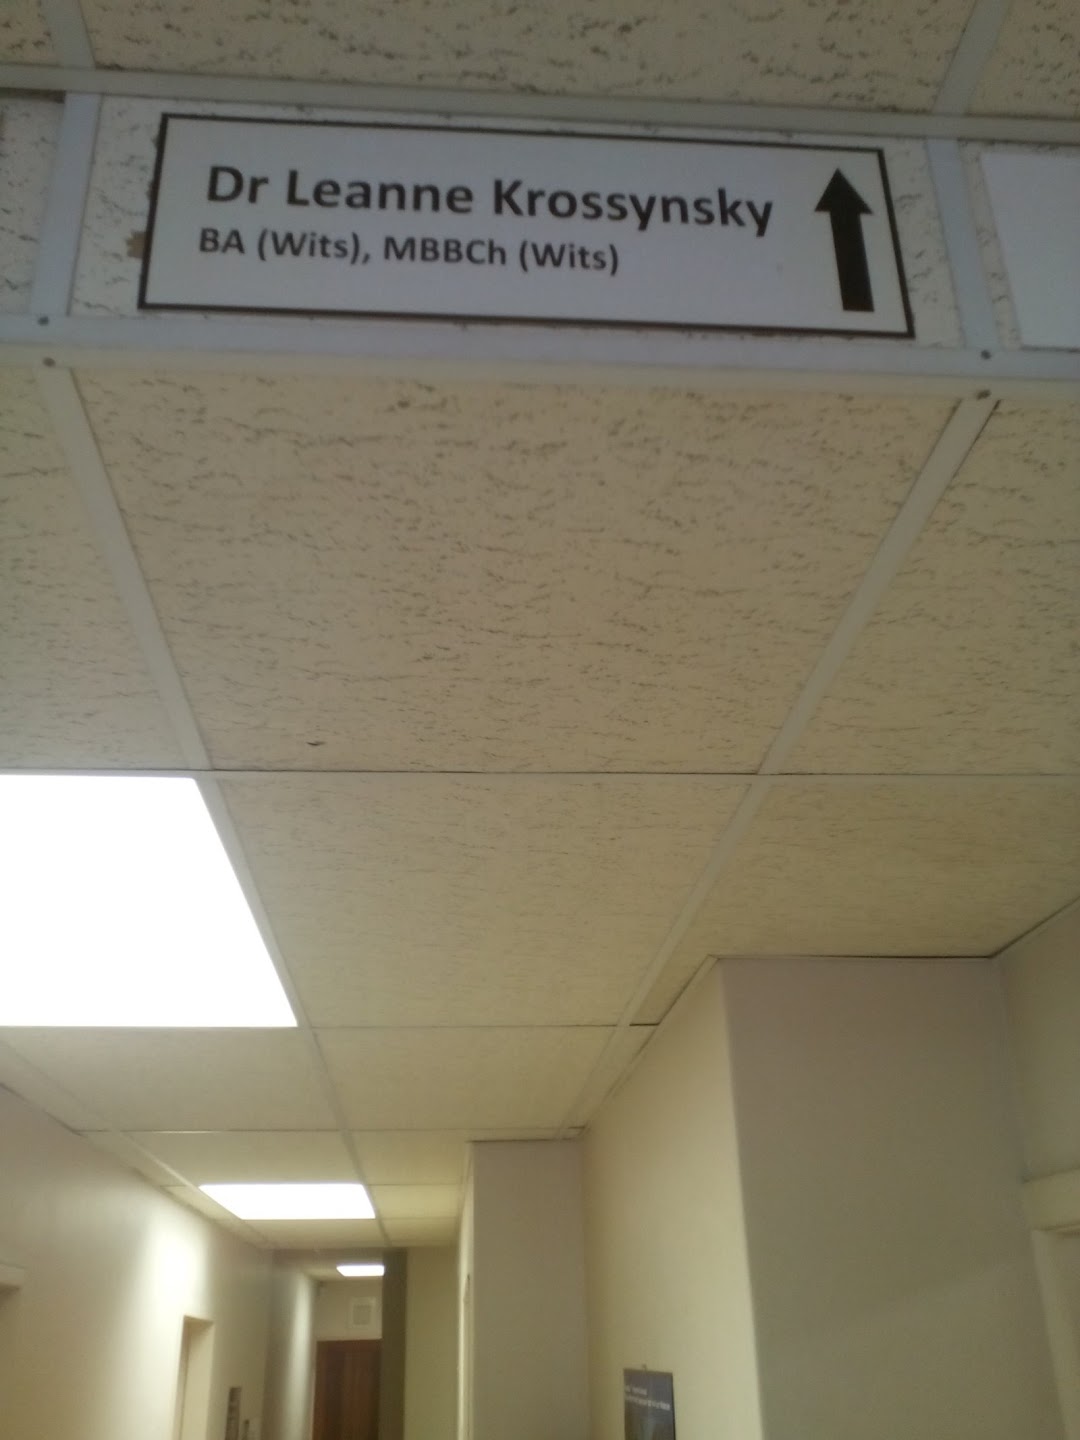 Dr Leanne Krossynsky